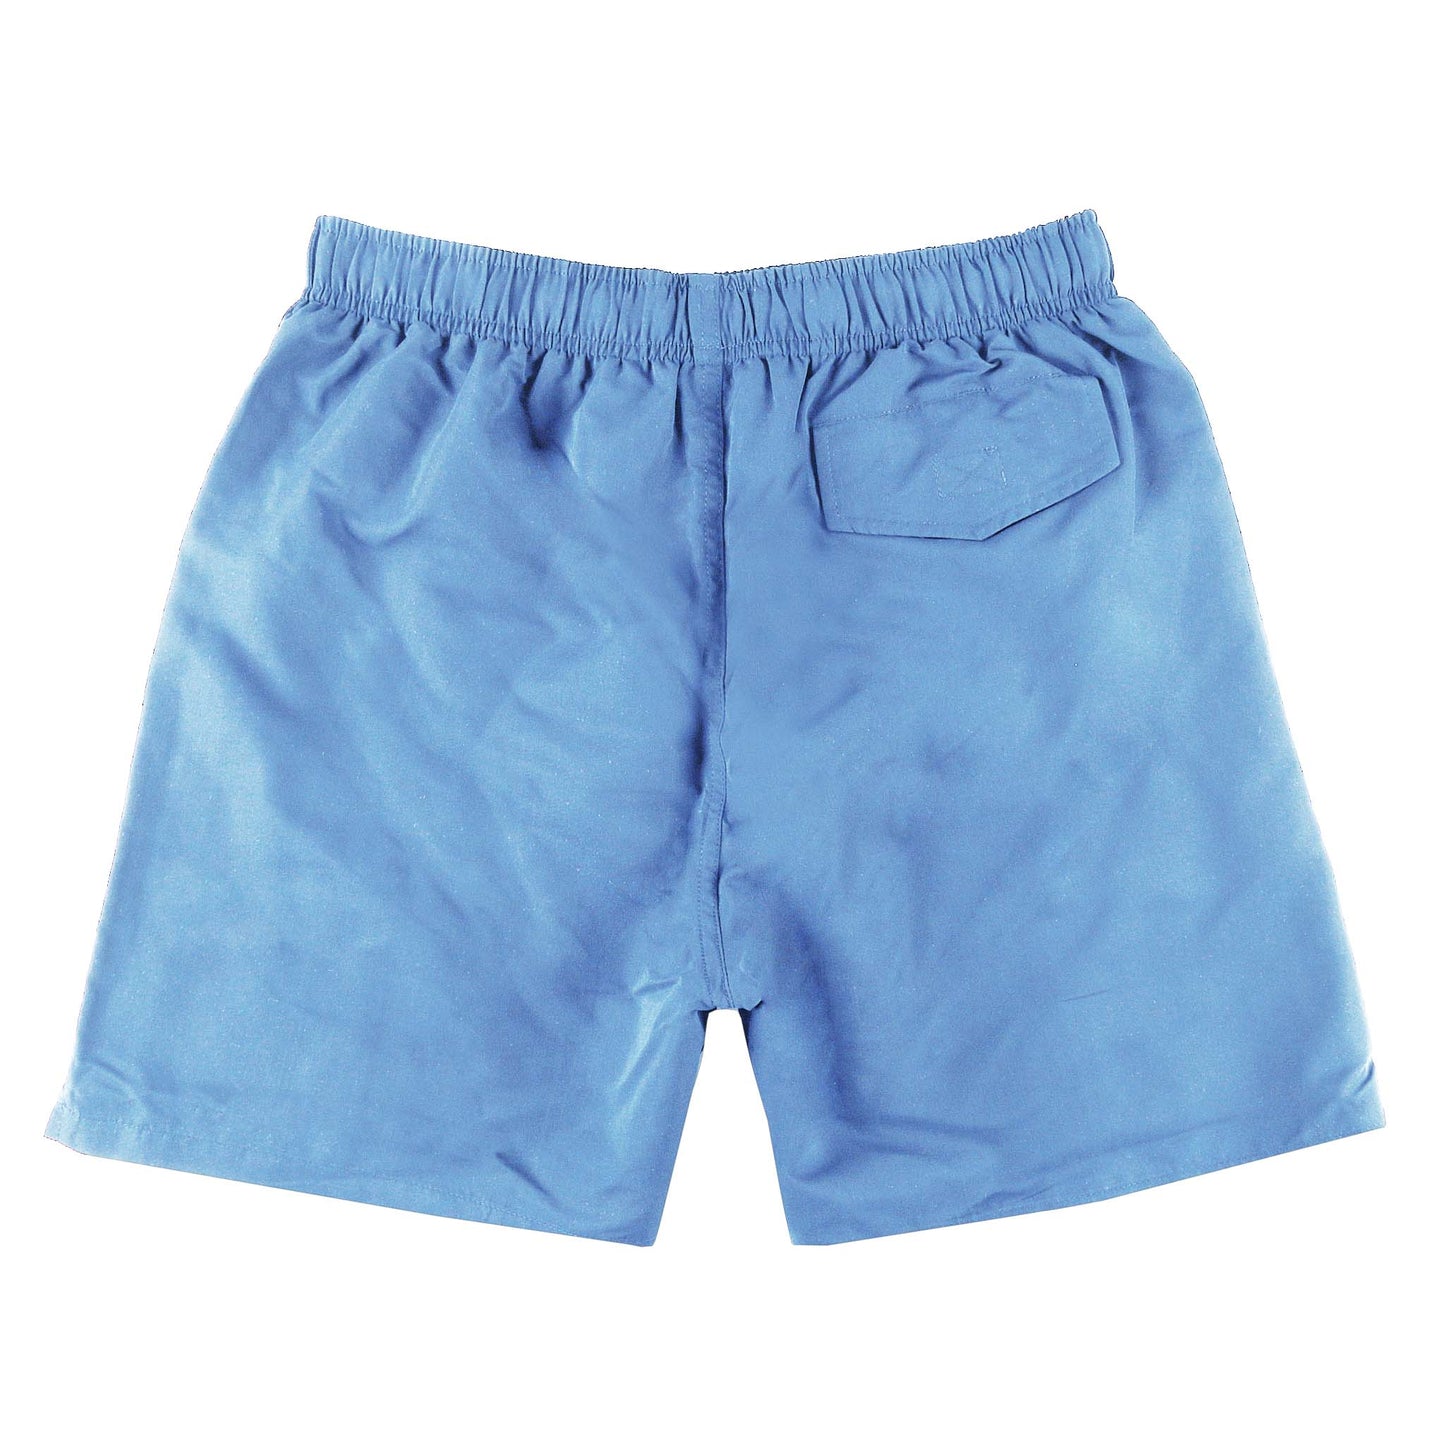 Ice Blue Boys Swimsuit Shorts